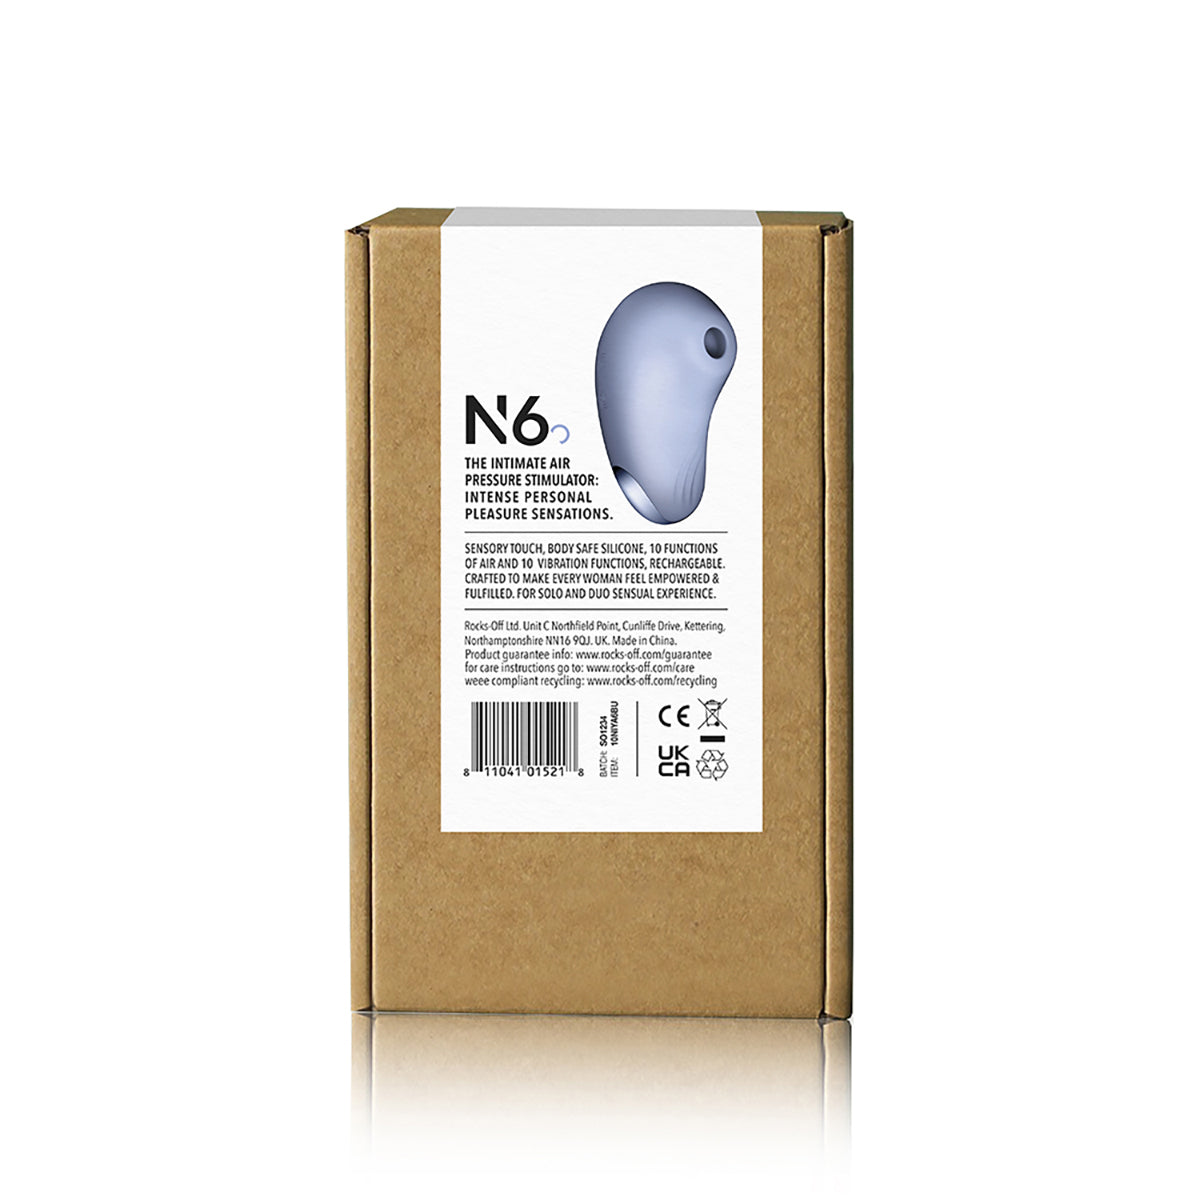 NIYA 6 Intimate Air Pressure Stimulator - Cornflower (Rebranded Packaging)